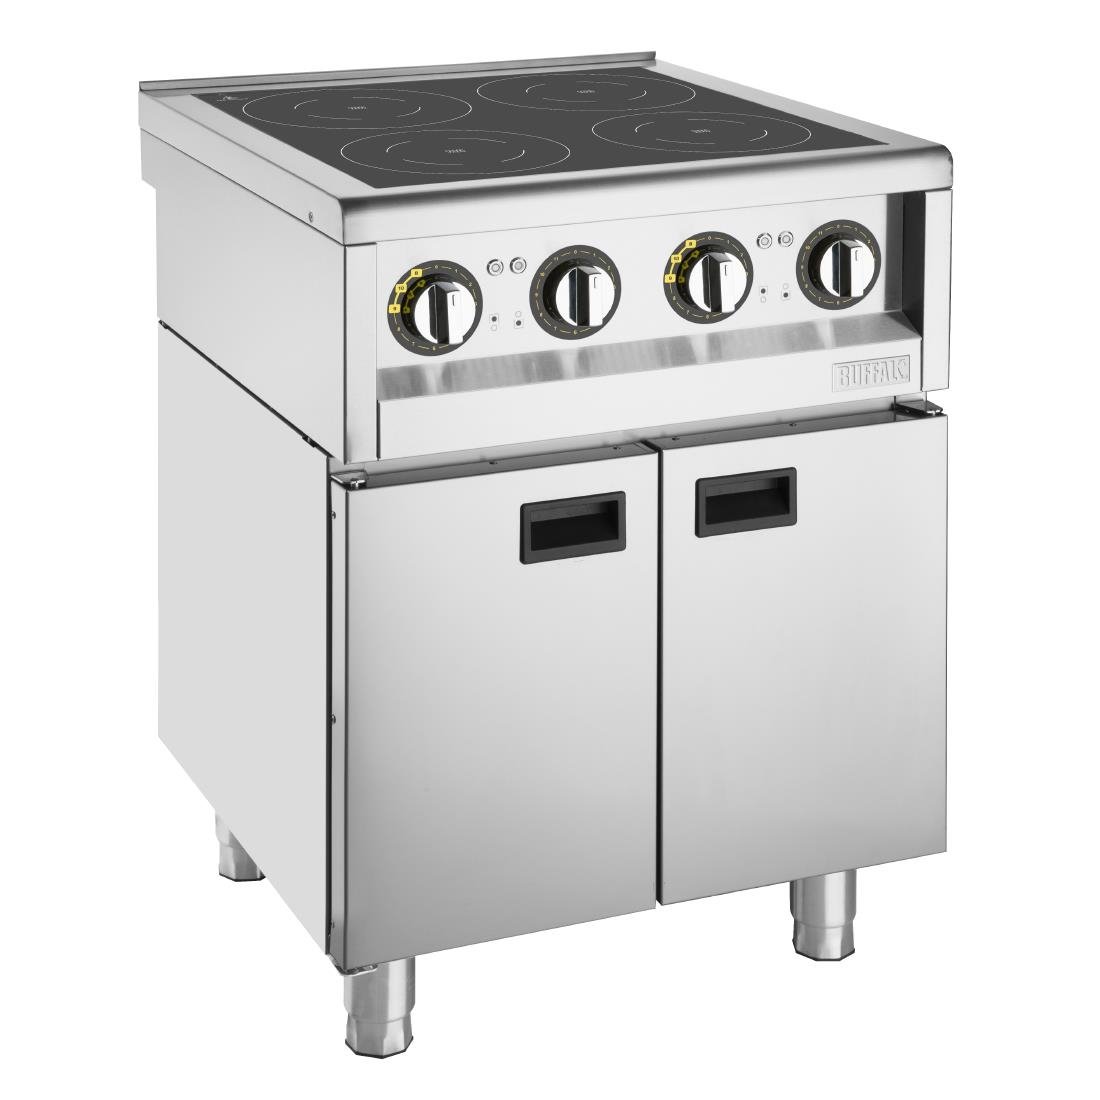 Plaque de cuisson à induction Buffalo Série 600 4 zones 2 x 3 kW